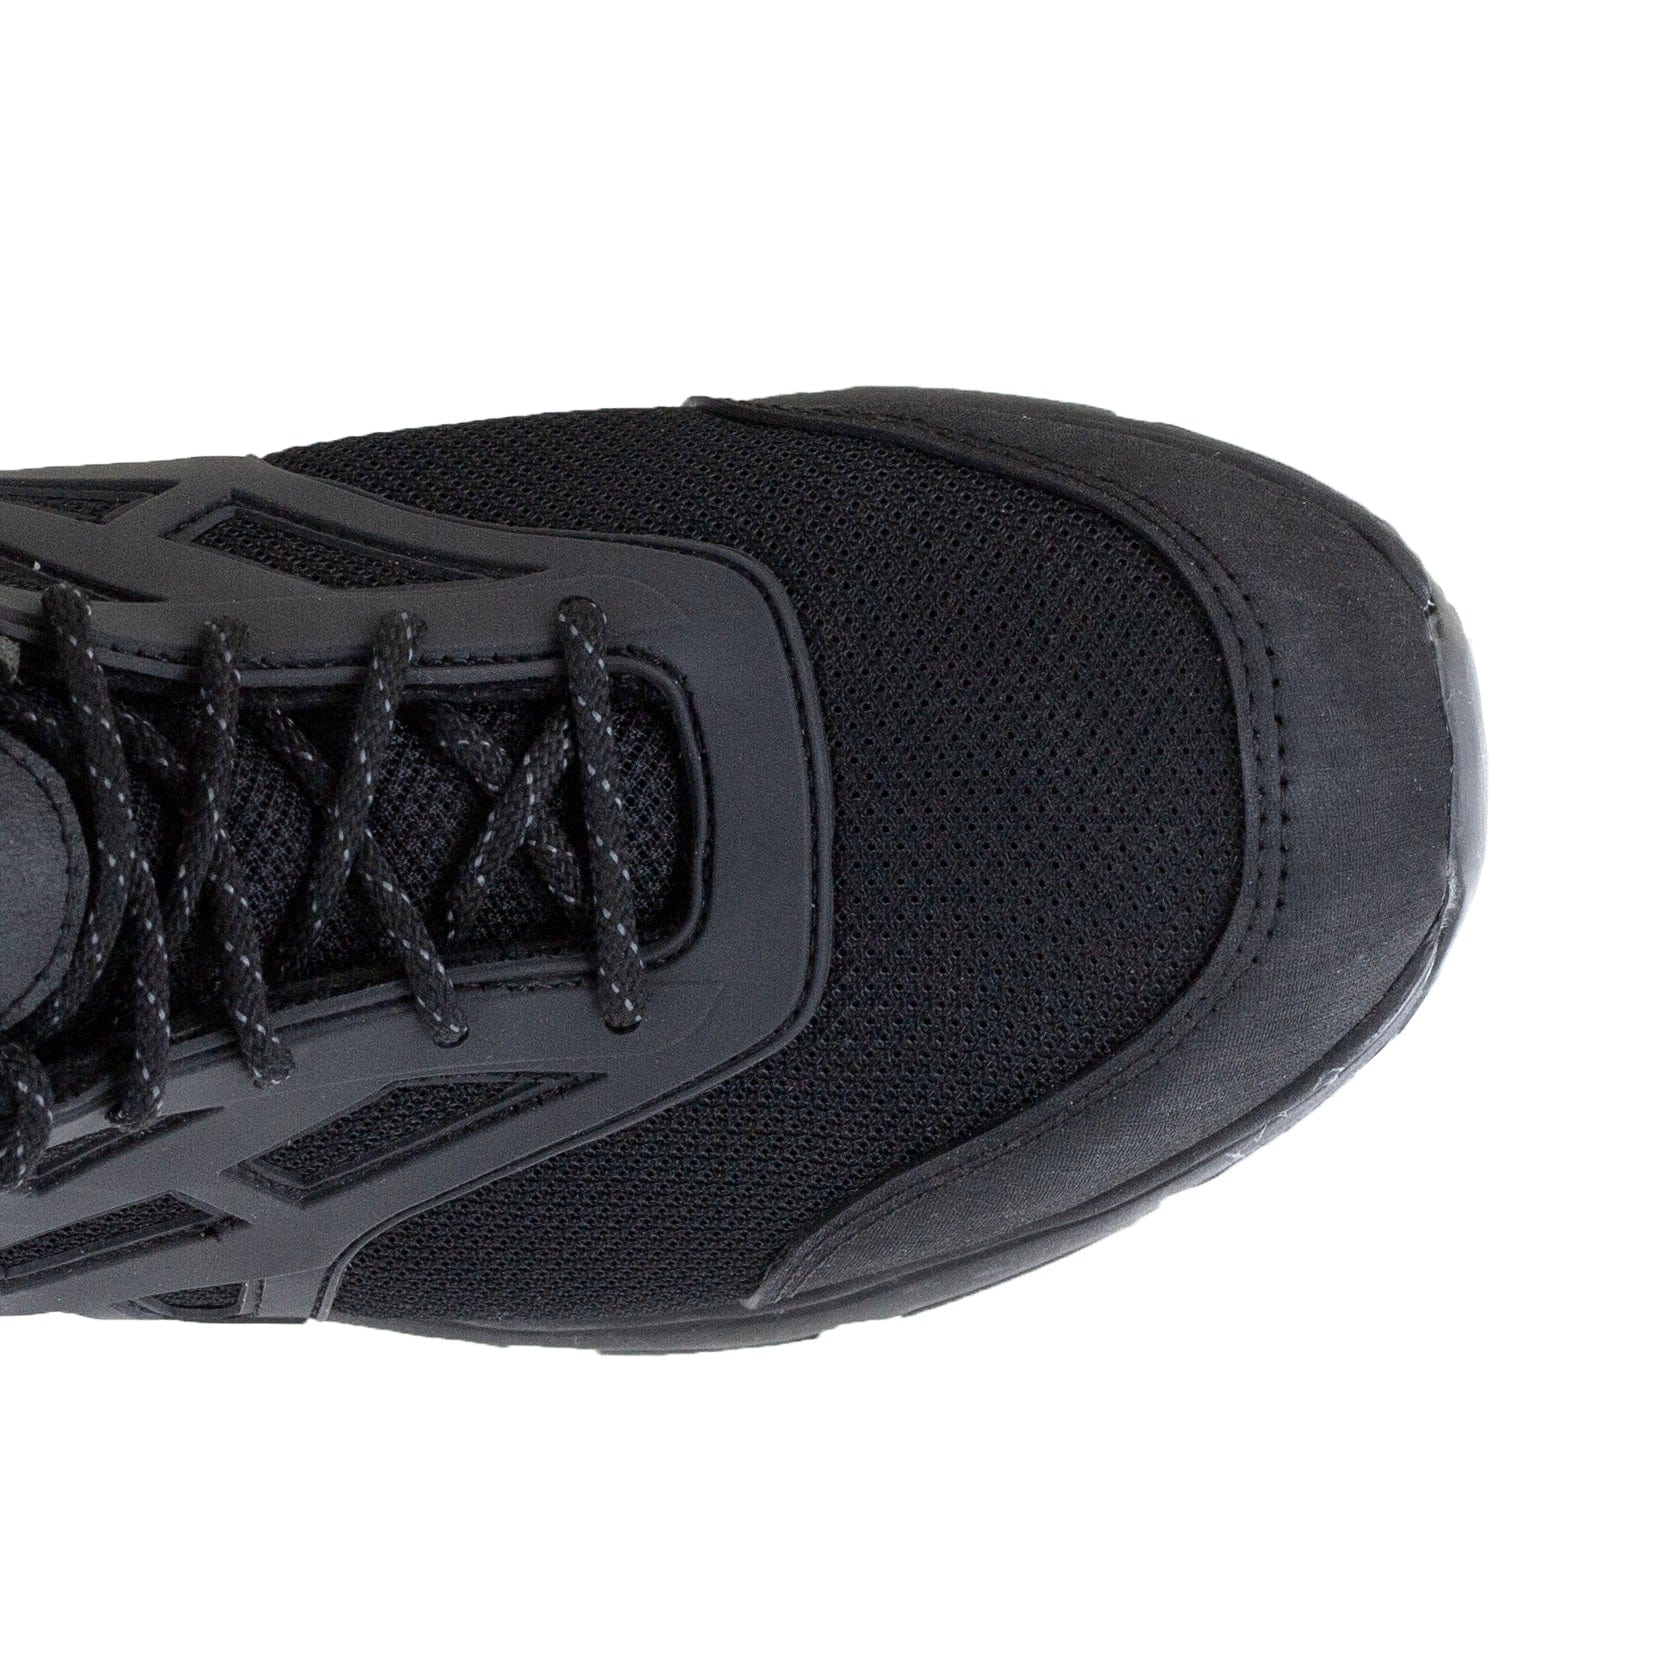 Men's carbon fiber toe work boots